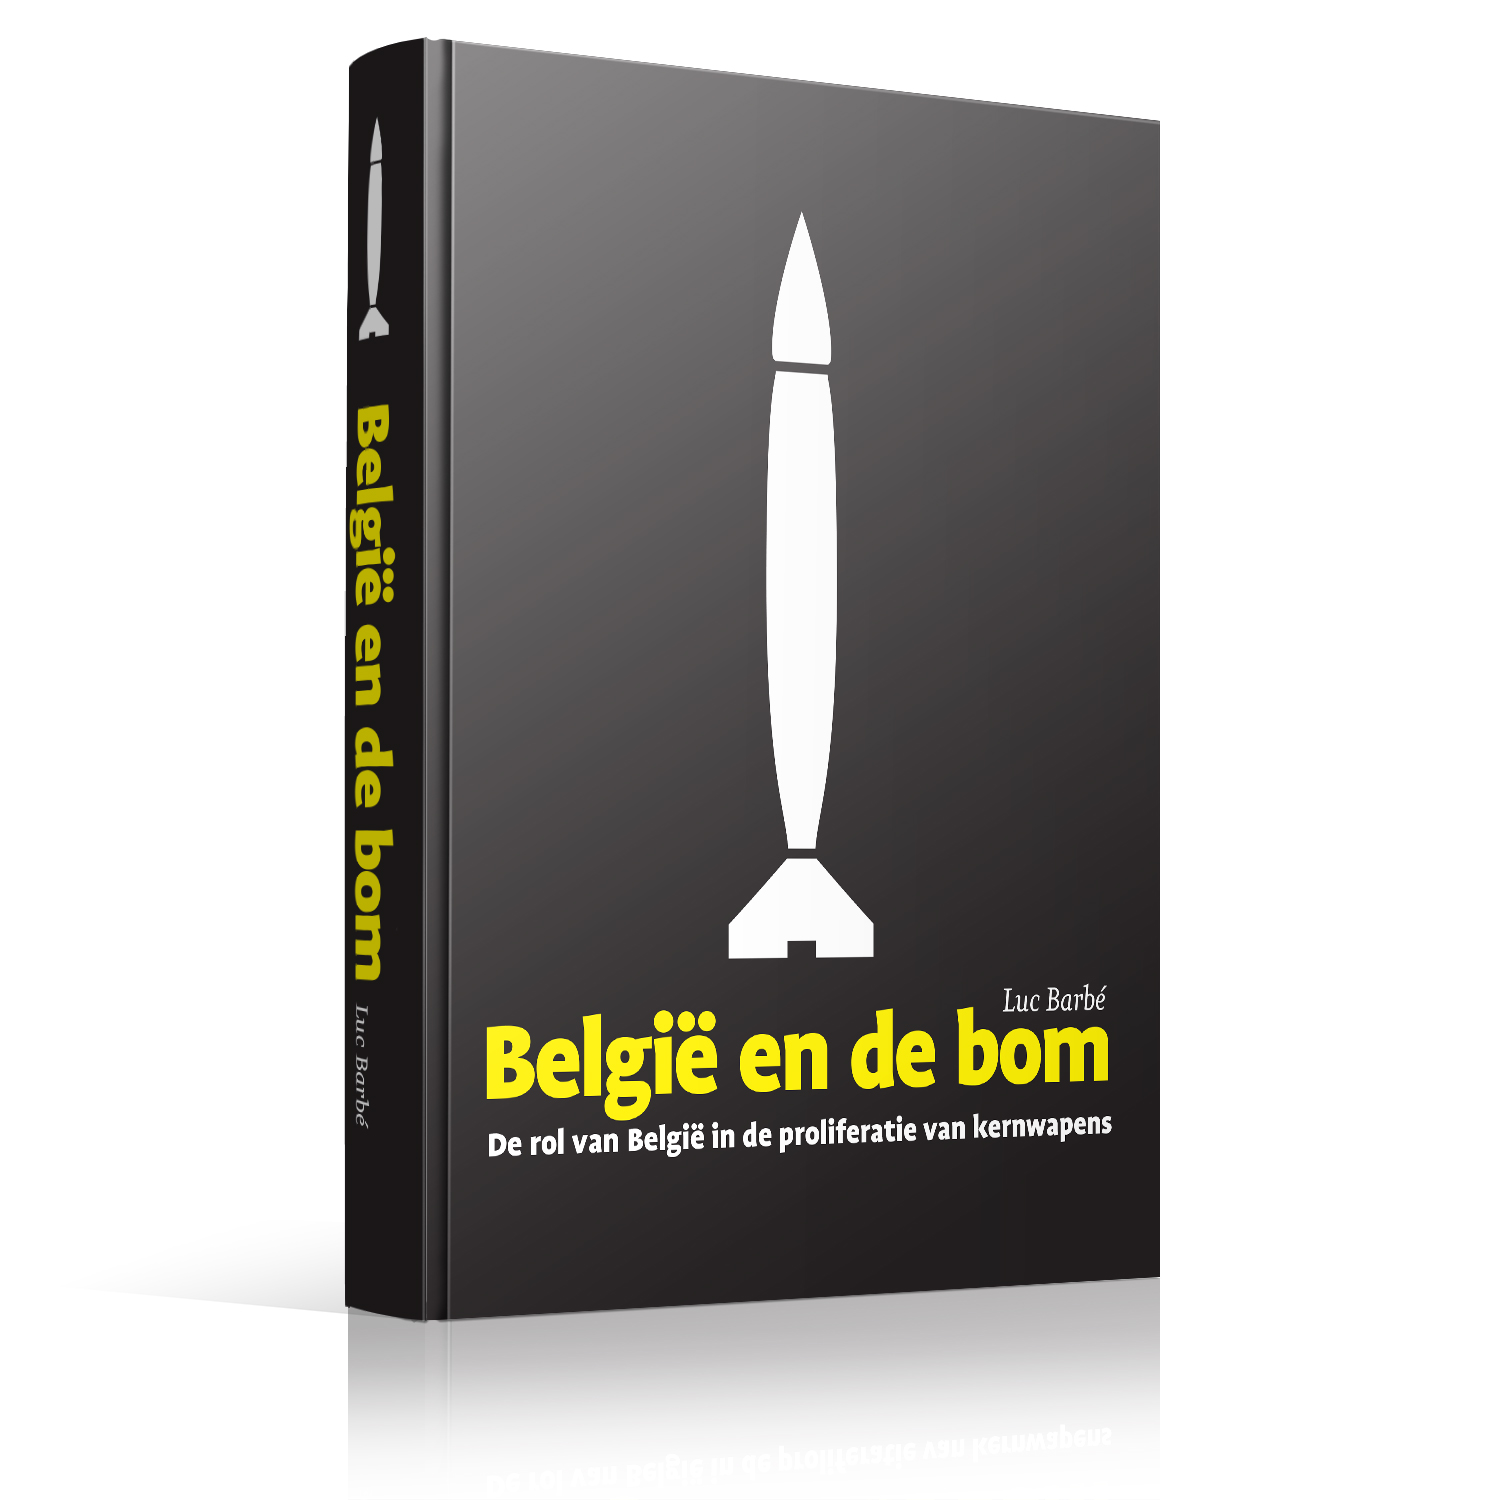 http://www.lucbarbe.be/sites/default/files/images/boek/cover/BelgieEnDeBom-Cover.jpg